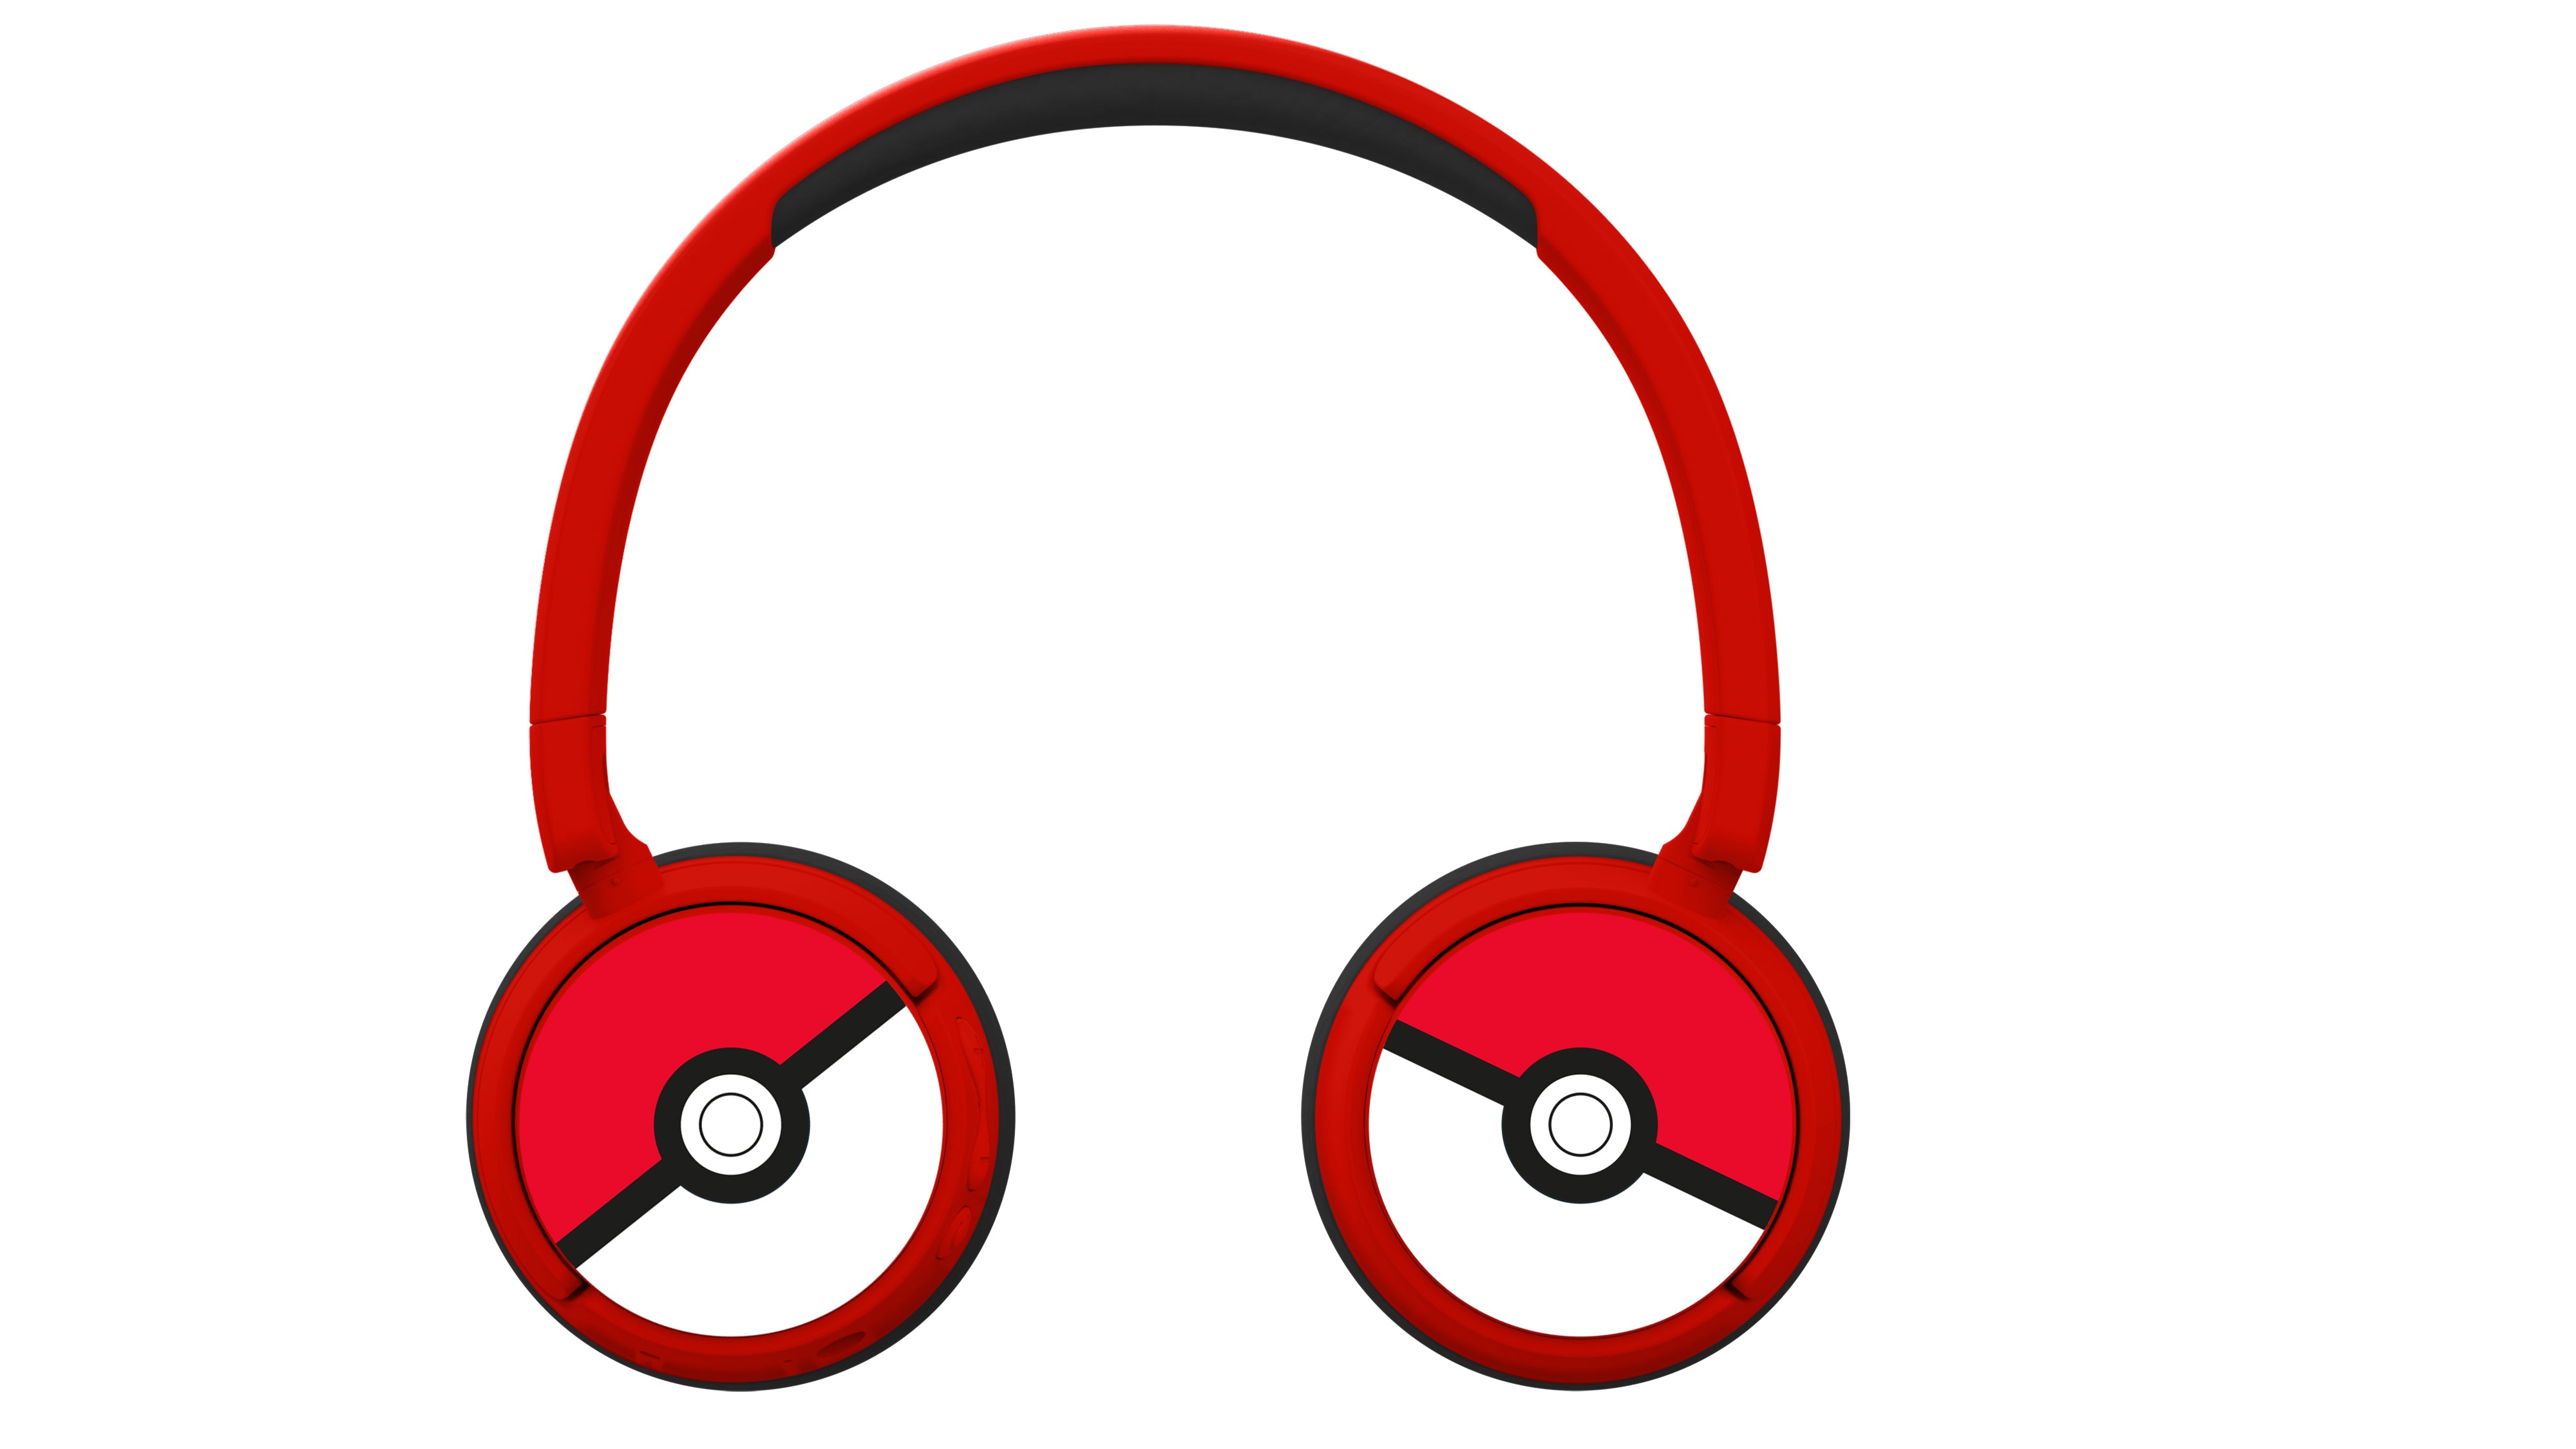 Pokemon Pokeball Wireless Headphones - Red